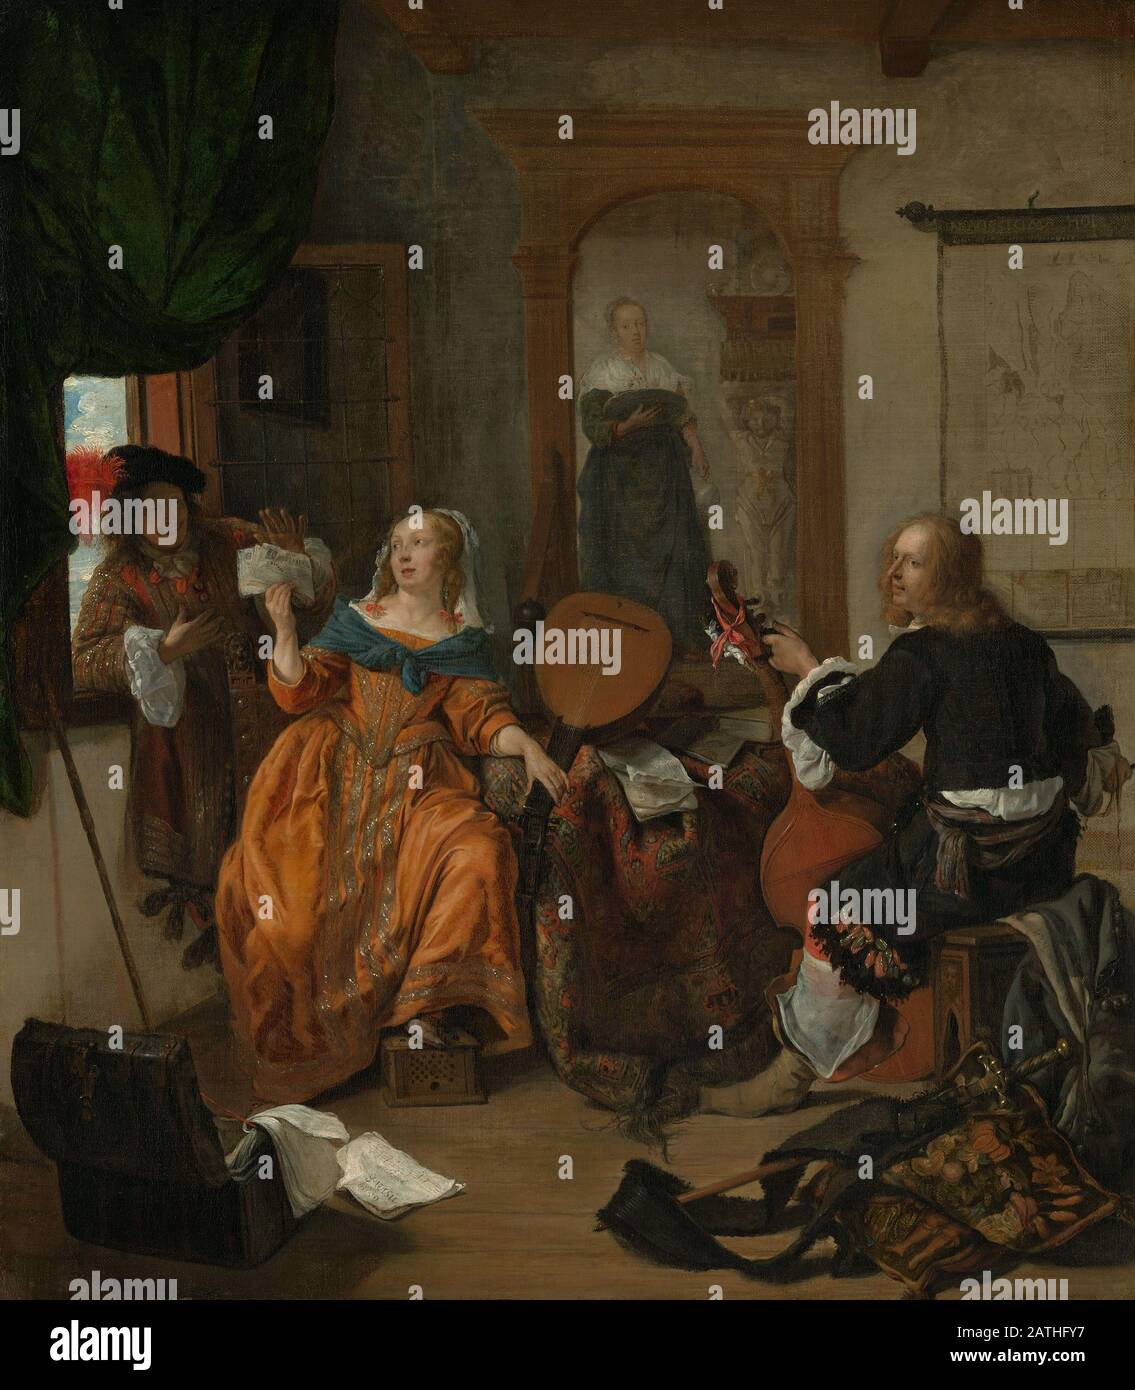 Gabriel Metsu Escuela holandesa una fiesta musical 1659 óleo sobre lienzo (62.2 x 54.3 cm) Nueva York, Museo Metropolitano de Arte Foto de stock